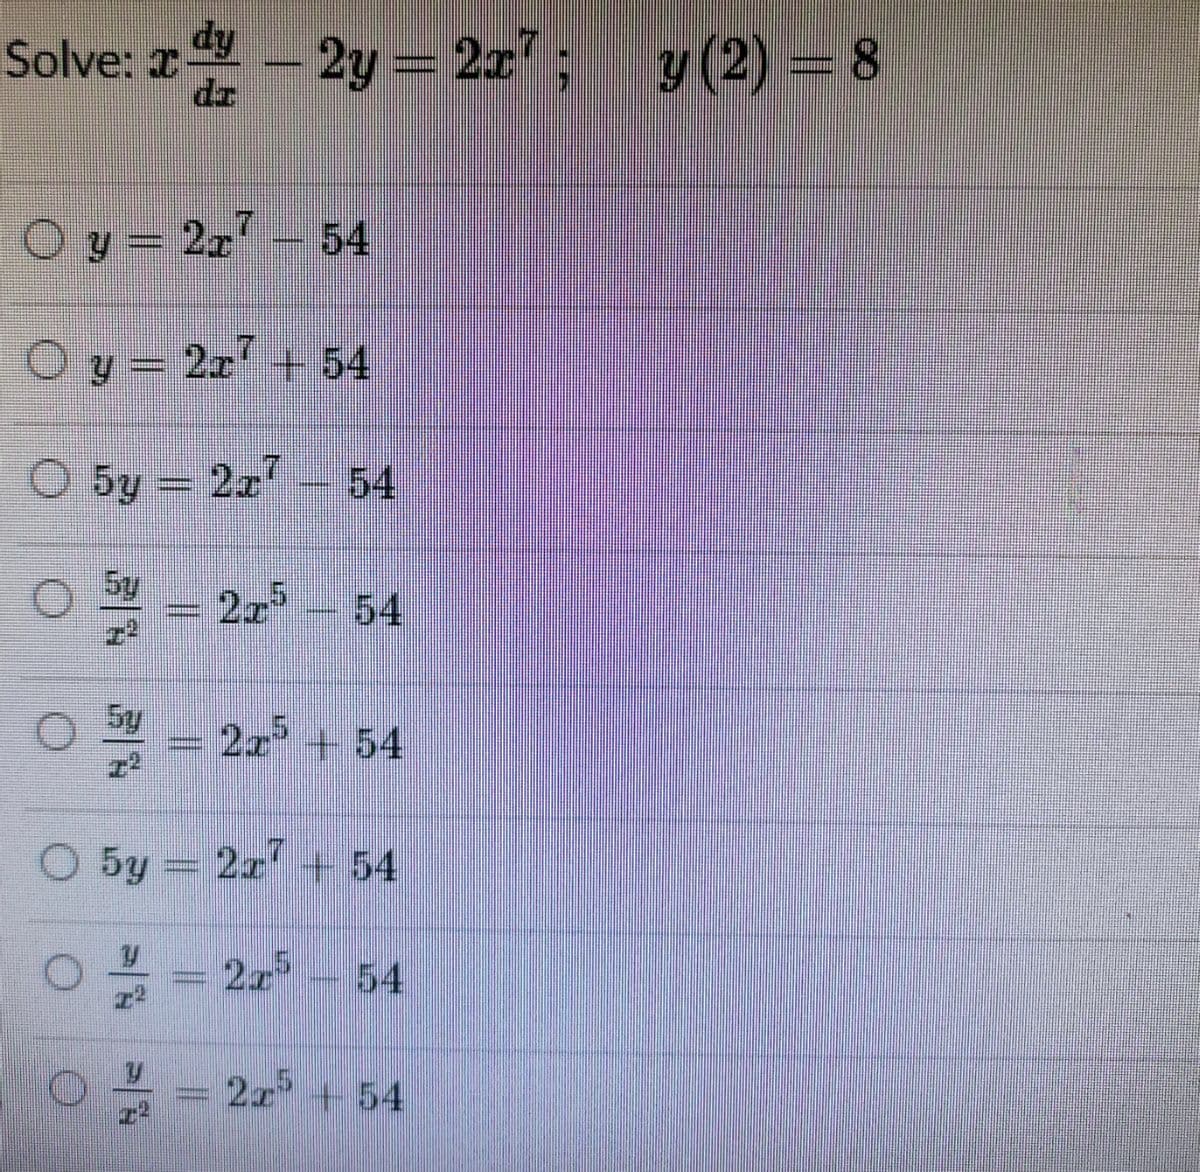 Solve: r
dy
2y = 2z'; y (2) = 8
.
O y = 2x
54
O y = 2x' + 54
O 5y = 227
54
5y
54
5y
2x + 54
O 5y
2x + 54
2 54
2x +54
